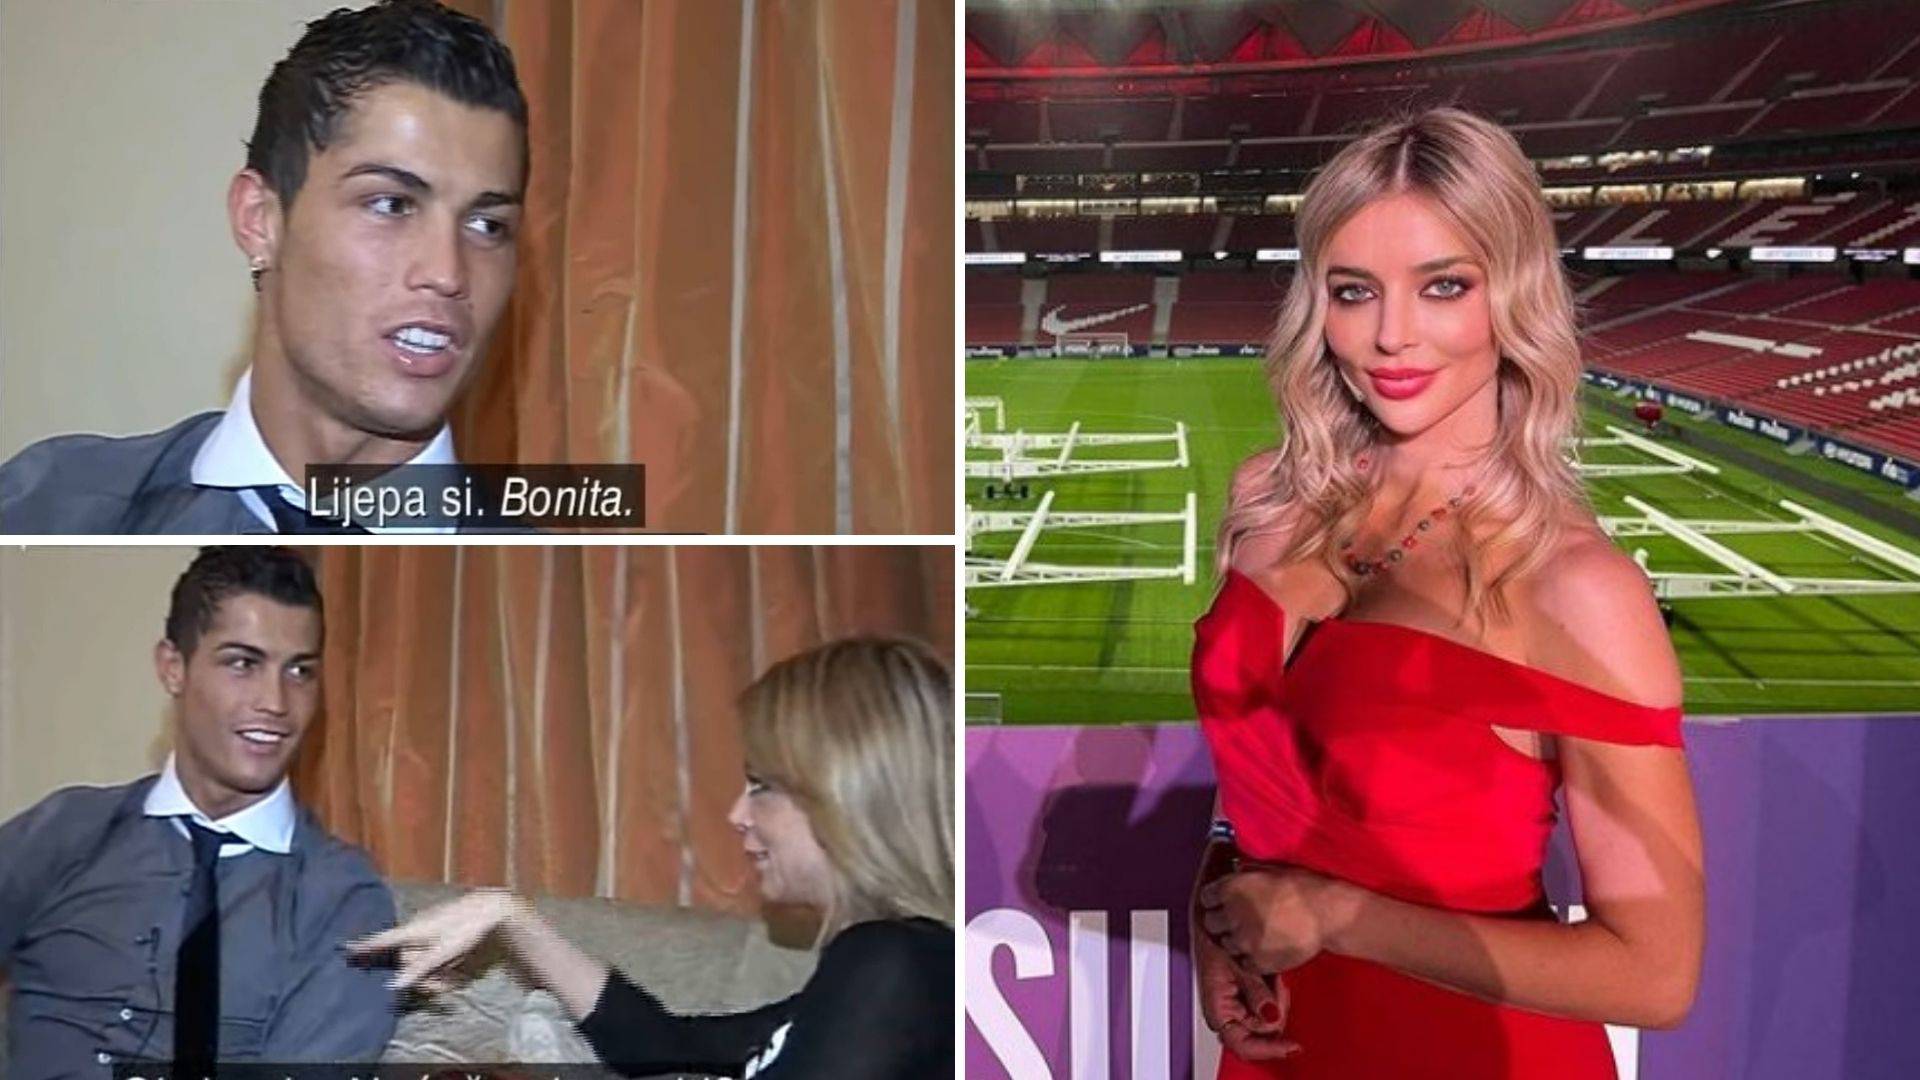 Legenda Reala nije jedini kojem je Fani zapela za oko: Ronaldo joj 'uletio' za vrijeme intervjua